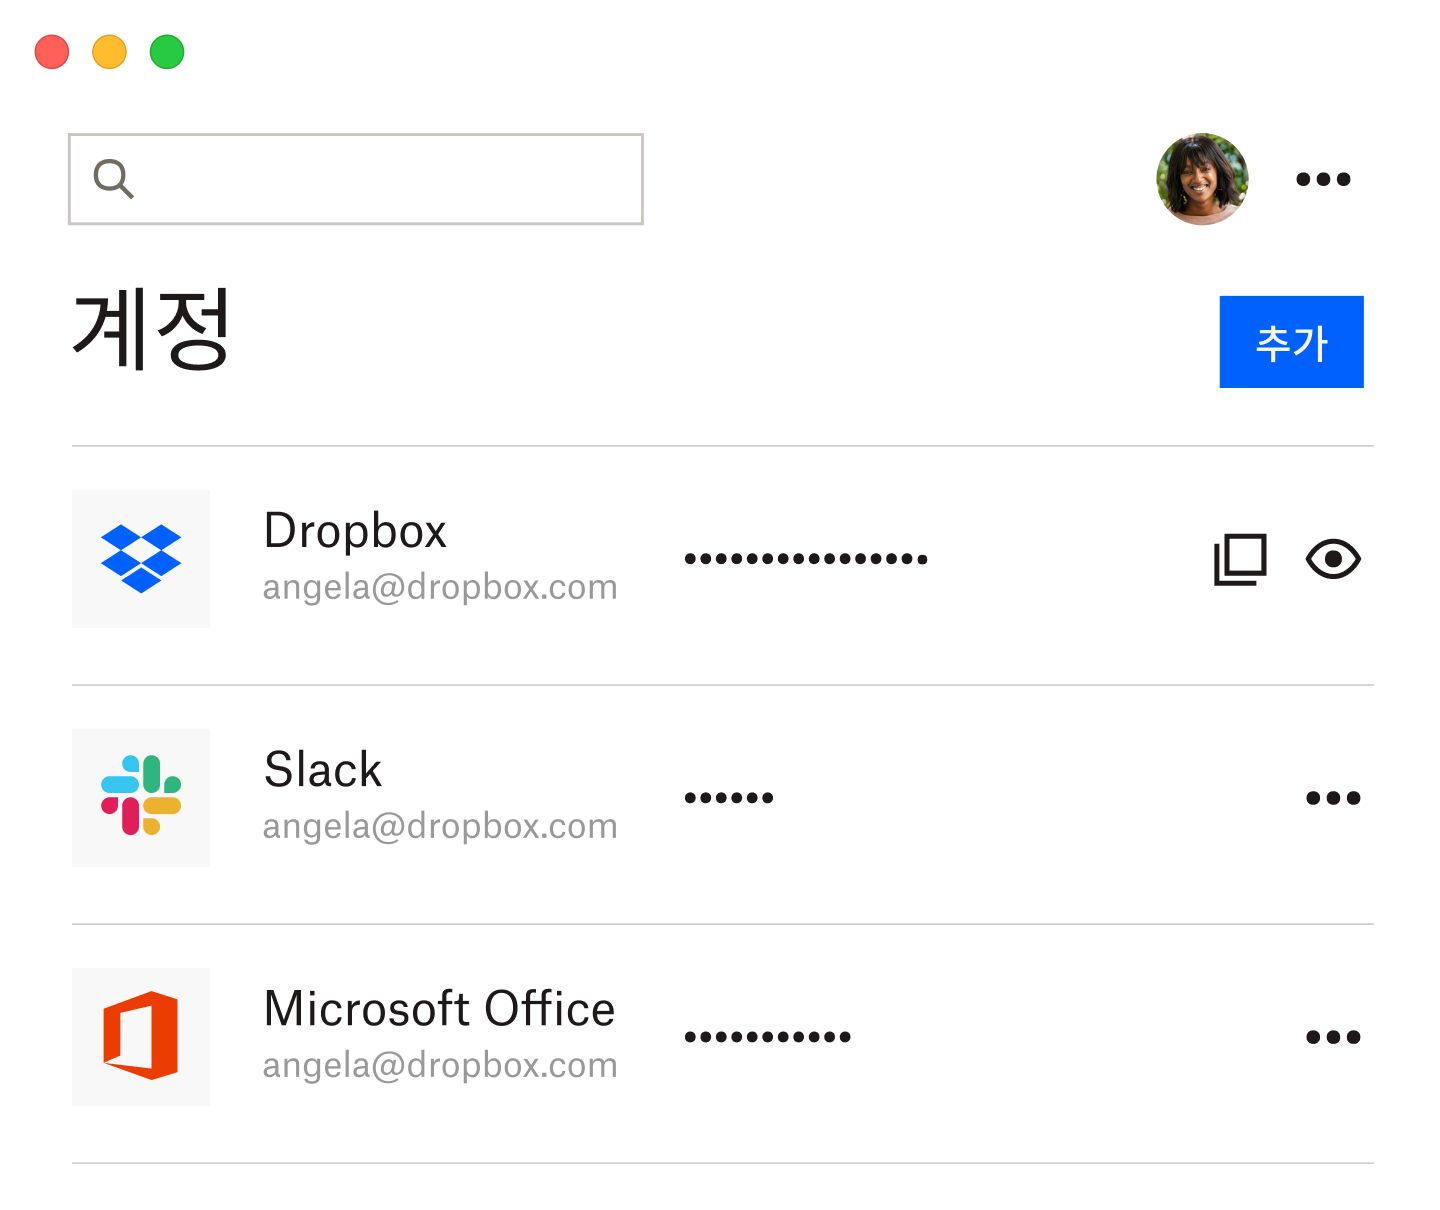 저장된 Dropbox, Slack, Microsoft Office 비밀번호 목록이 표시된 Dropbox 비밀번호 관리 도구